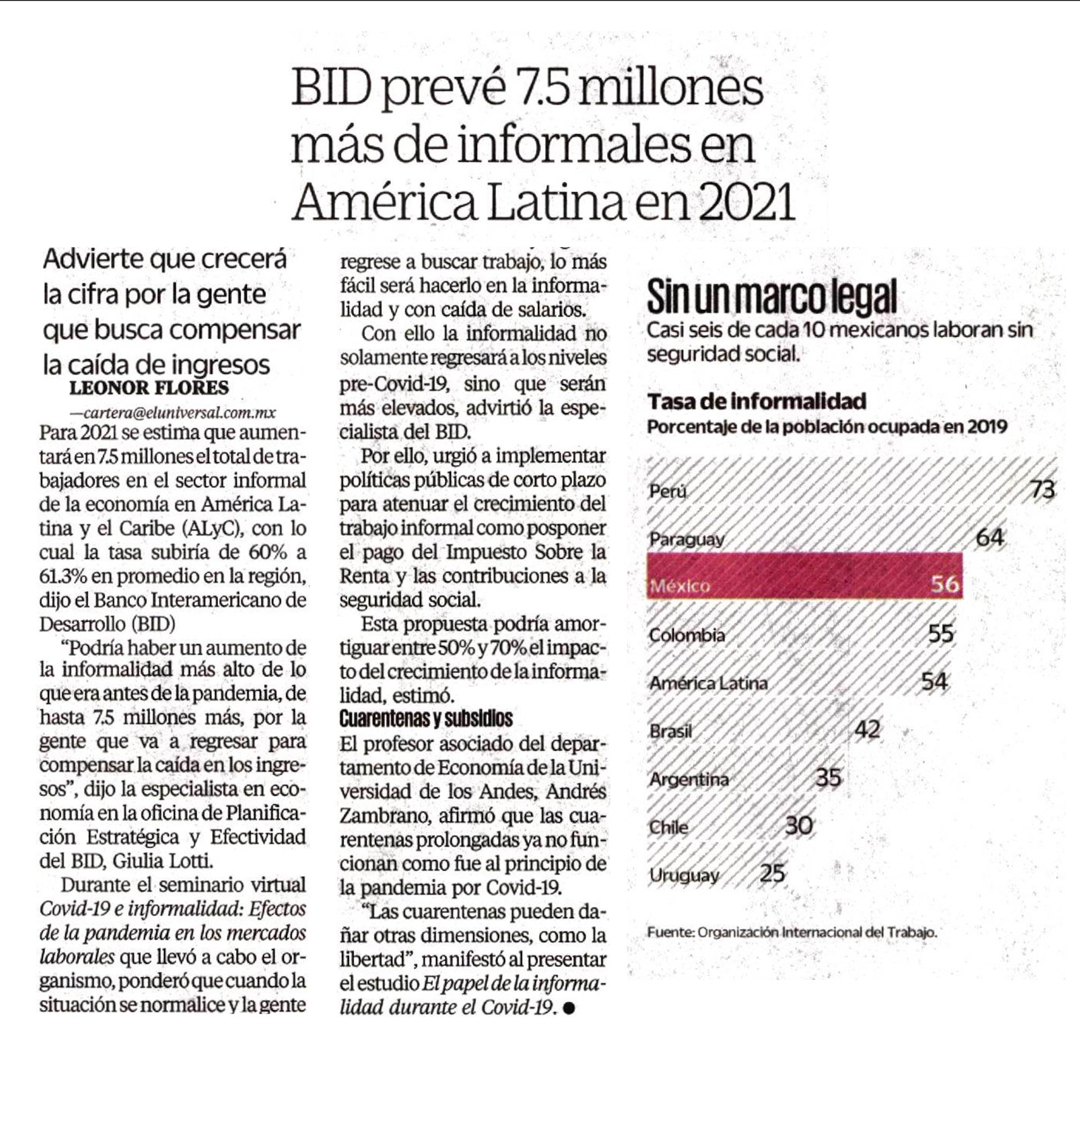 BID prevé 7.5 millones más de informales en América Latina en 2021